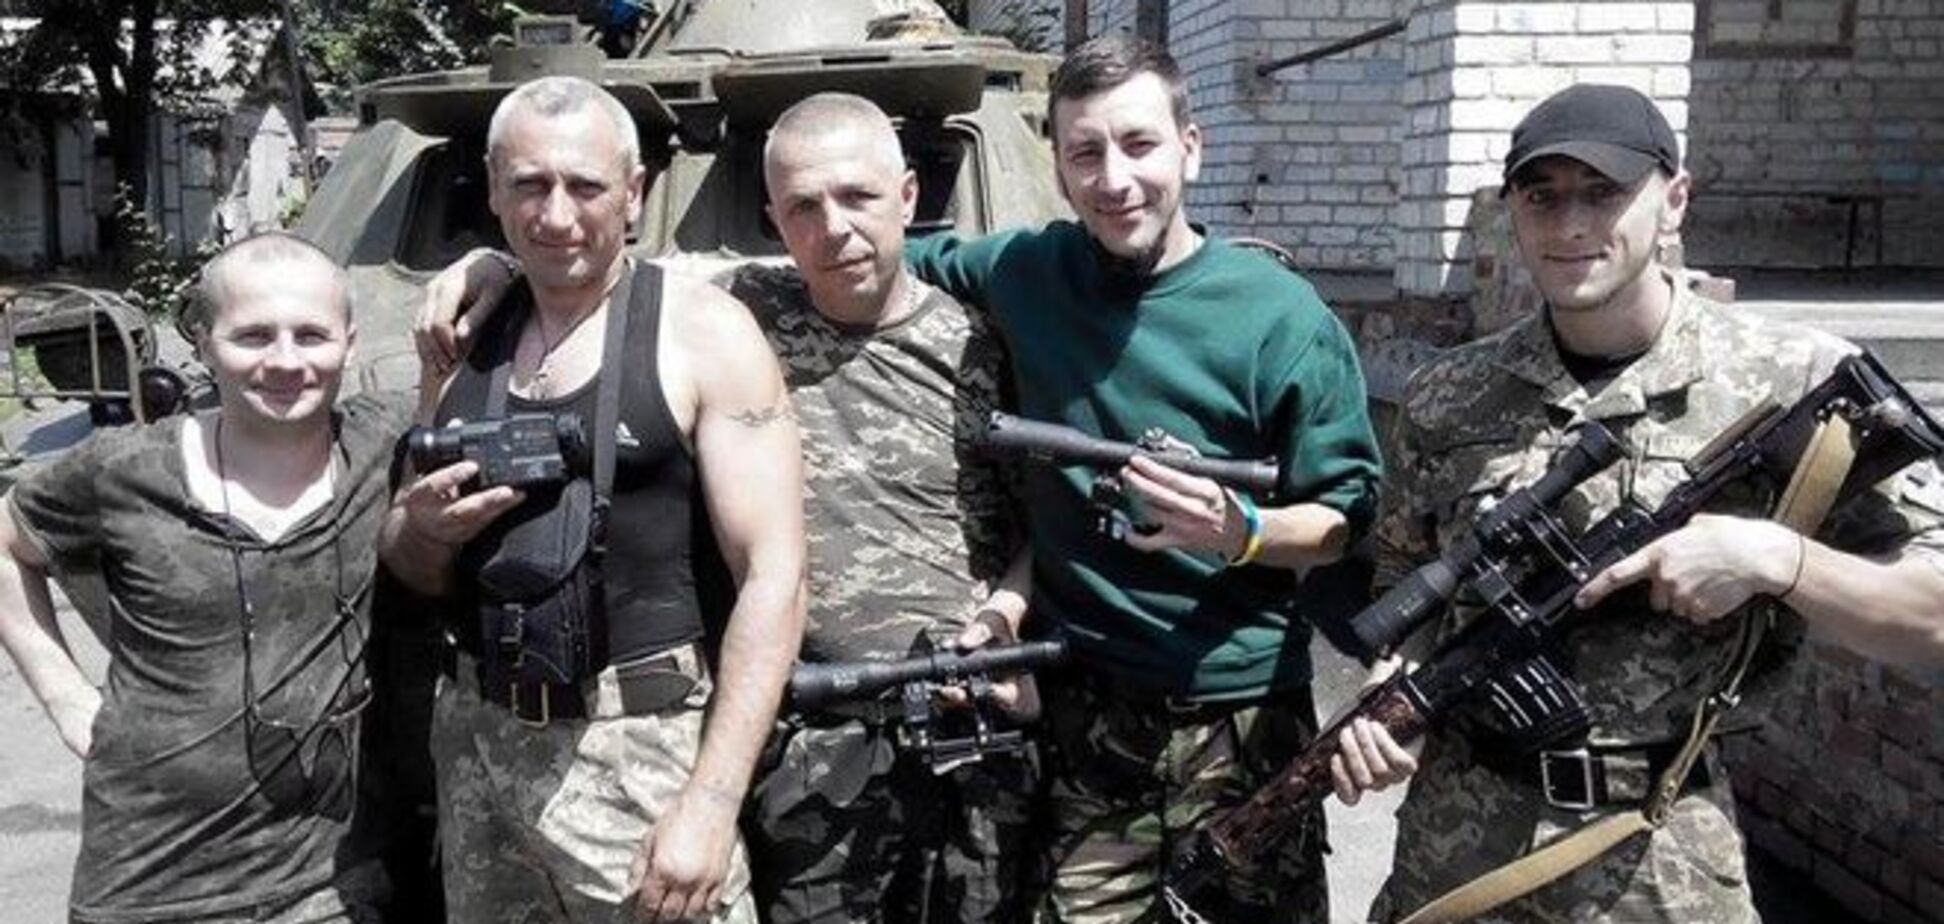 Довести дело до победы: террористы почувствовали превосходство украинской армии